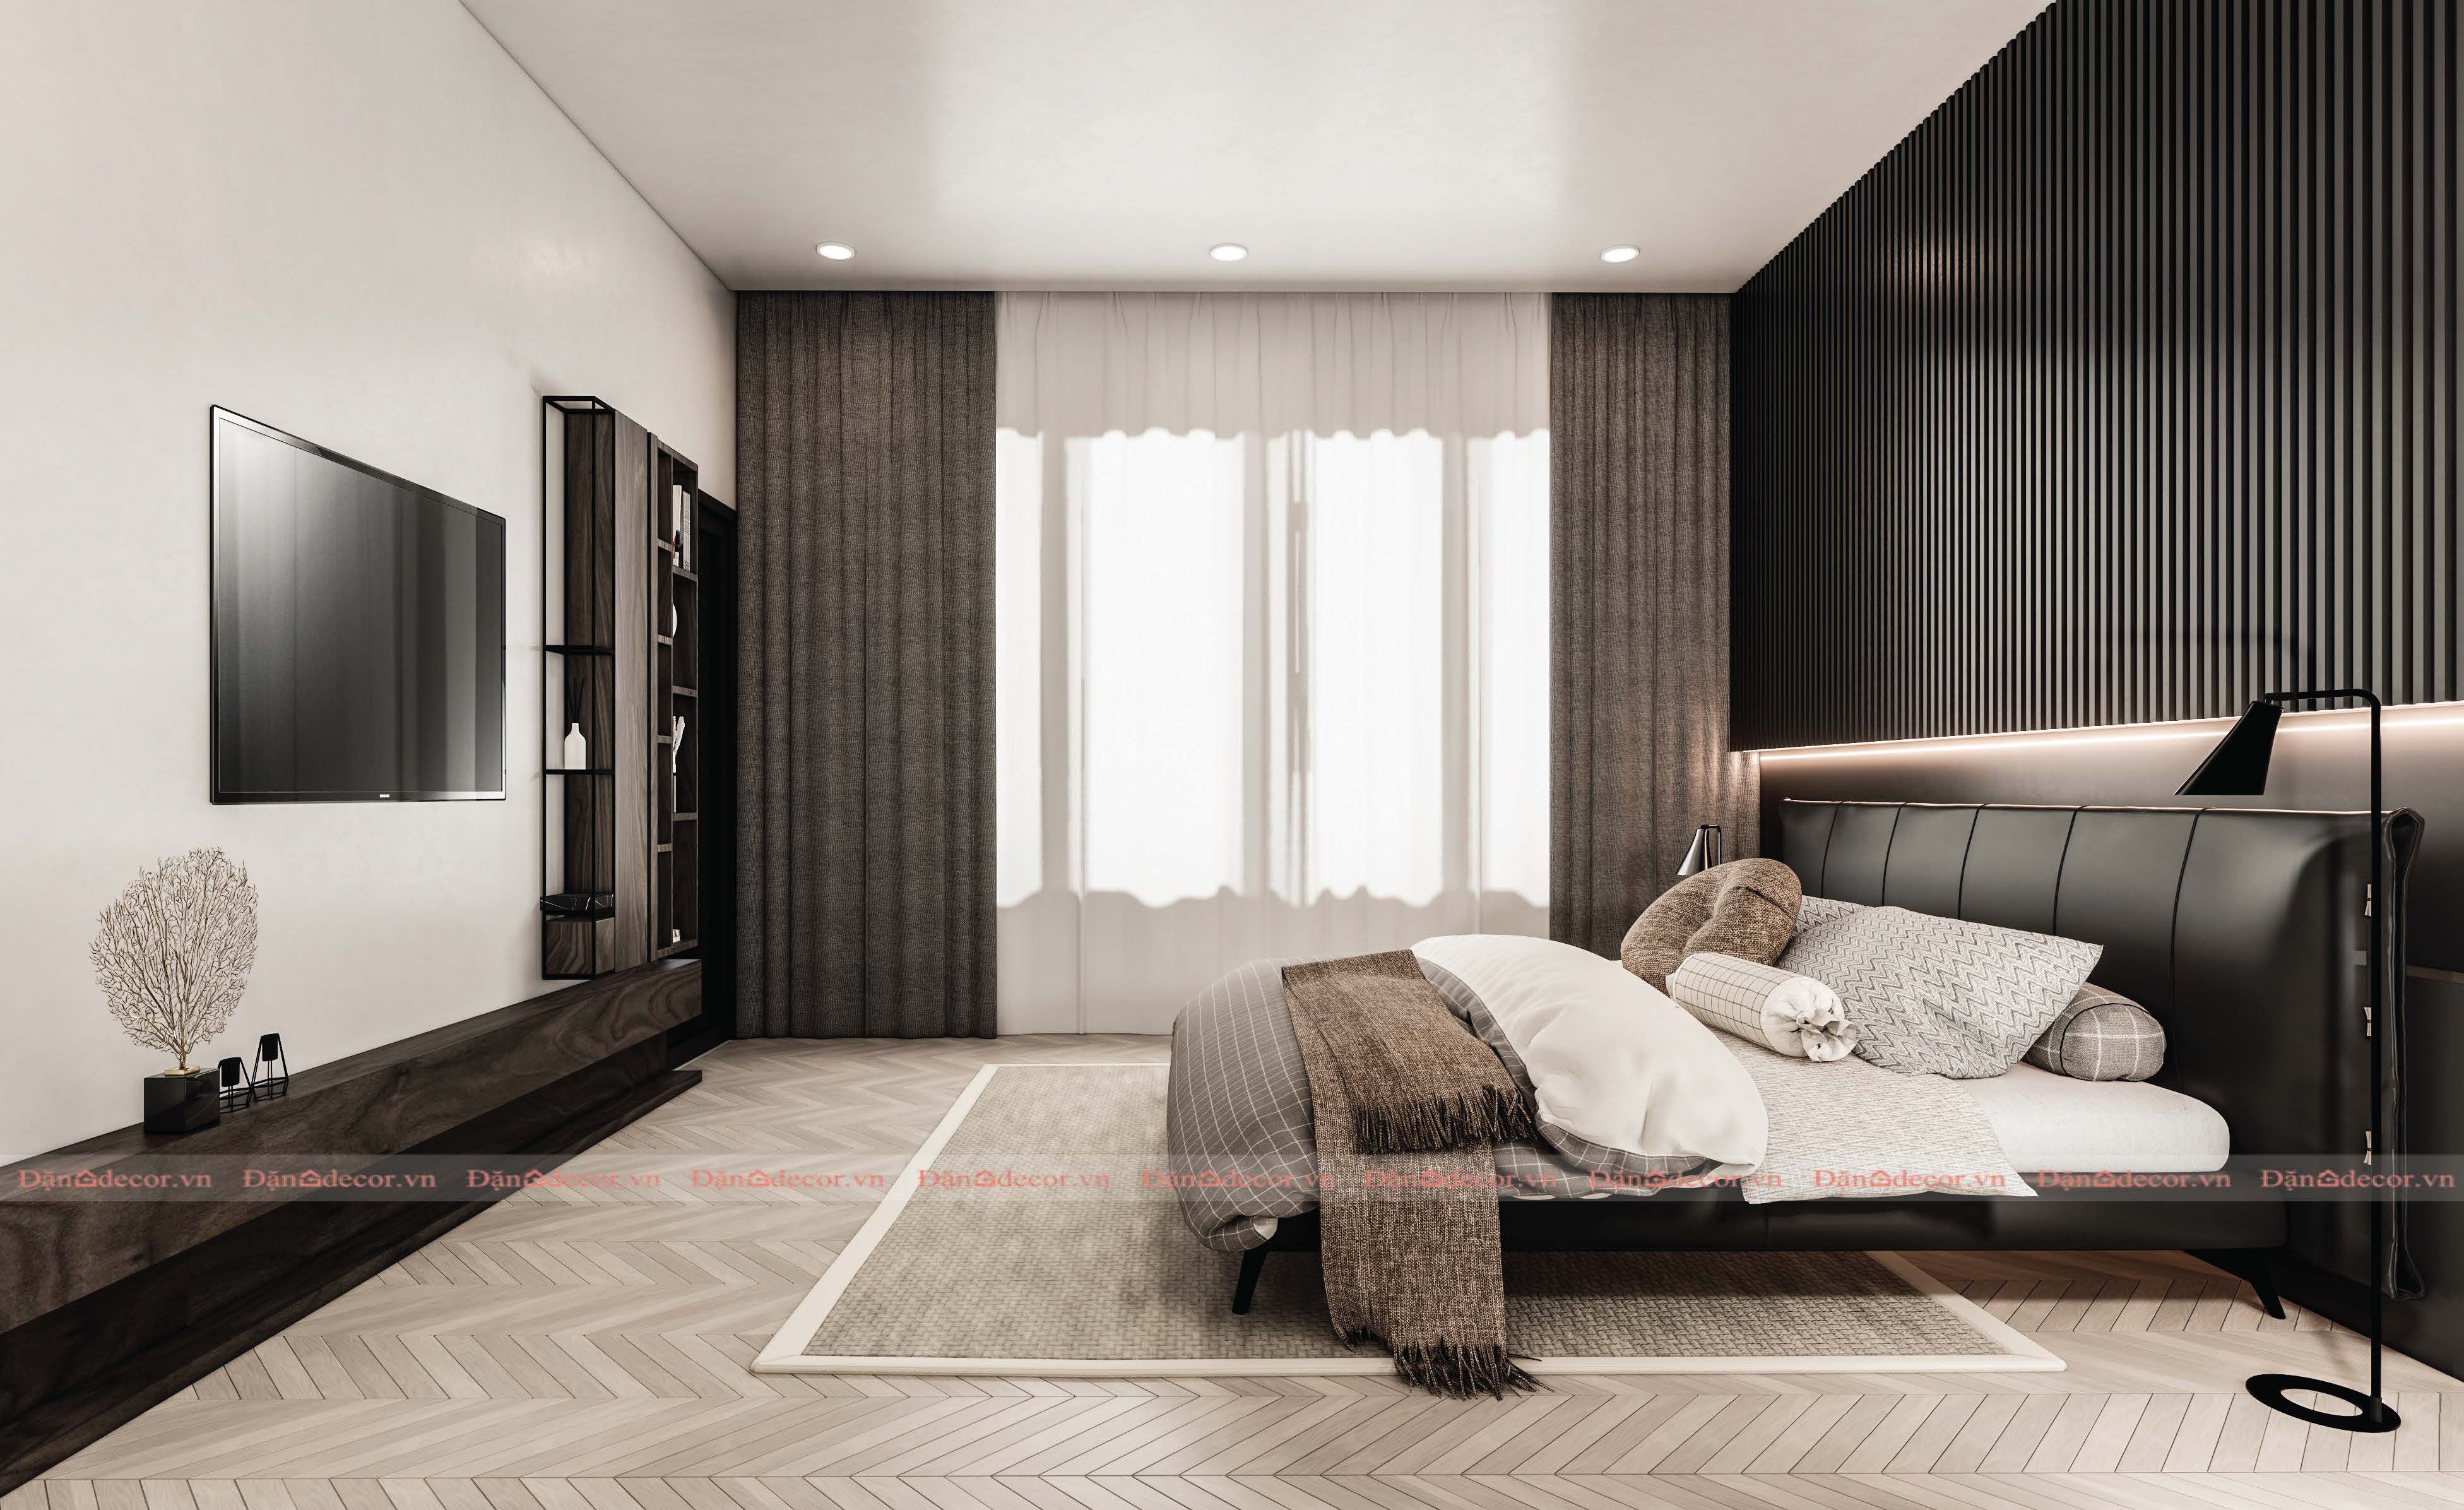 Mẫu giường ngủ hiện đại đẹp gỗ công nghiệp màu sắc trang nhã GN259